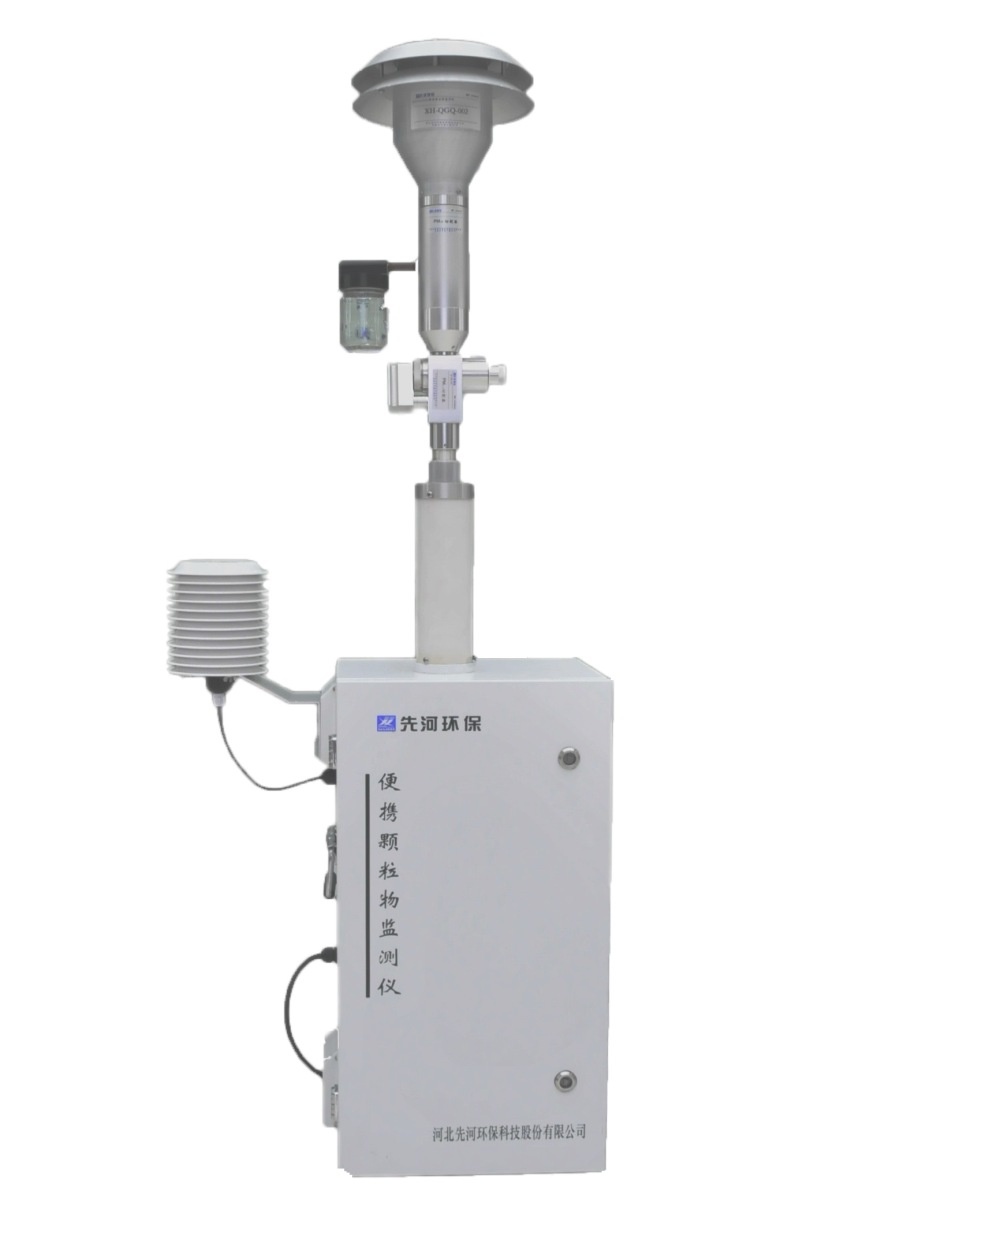 便携式射线法颗粒物监测仪XHPM2001的图片